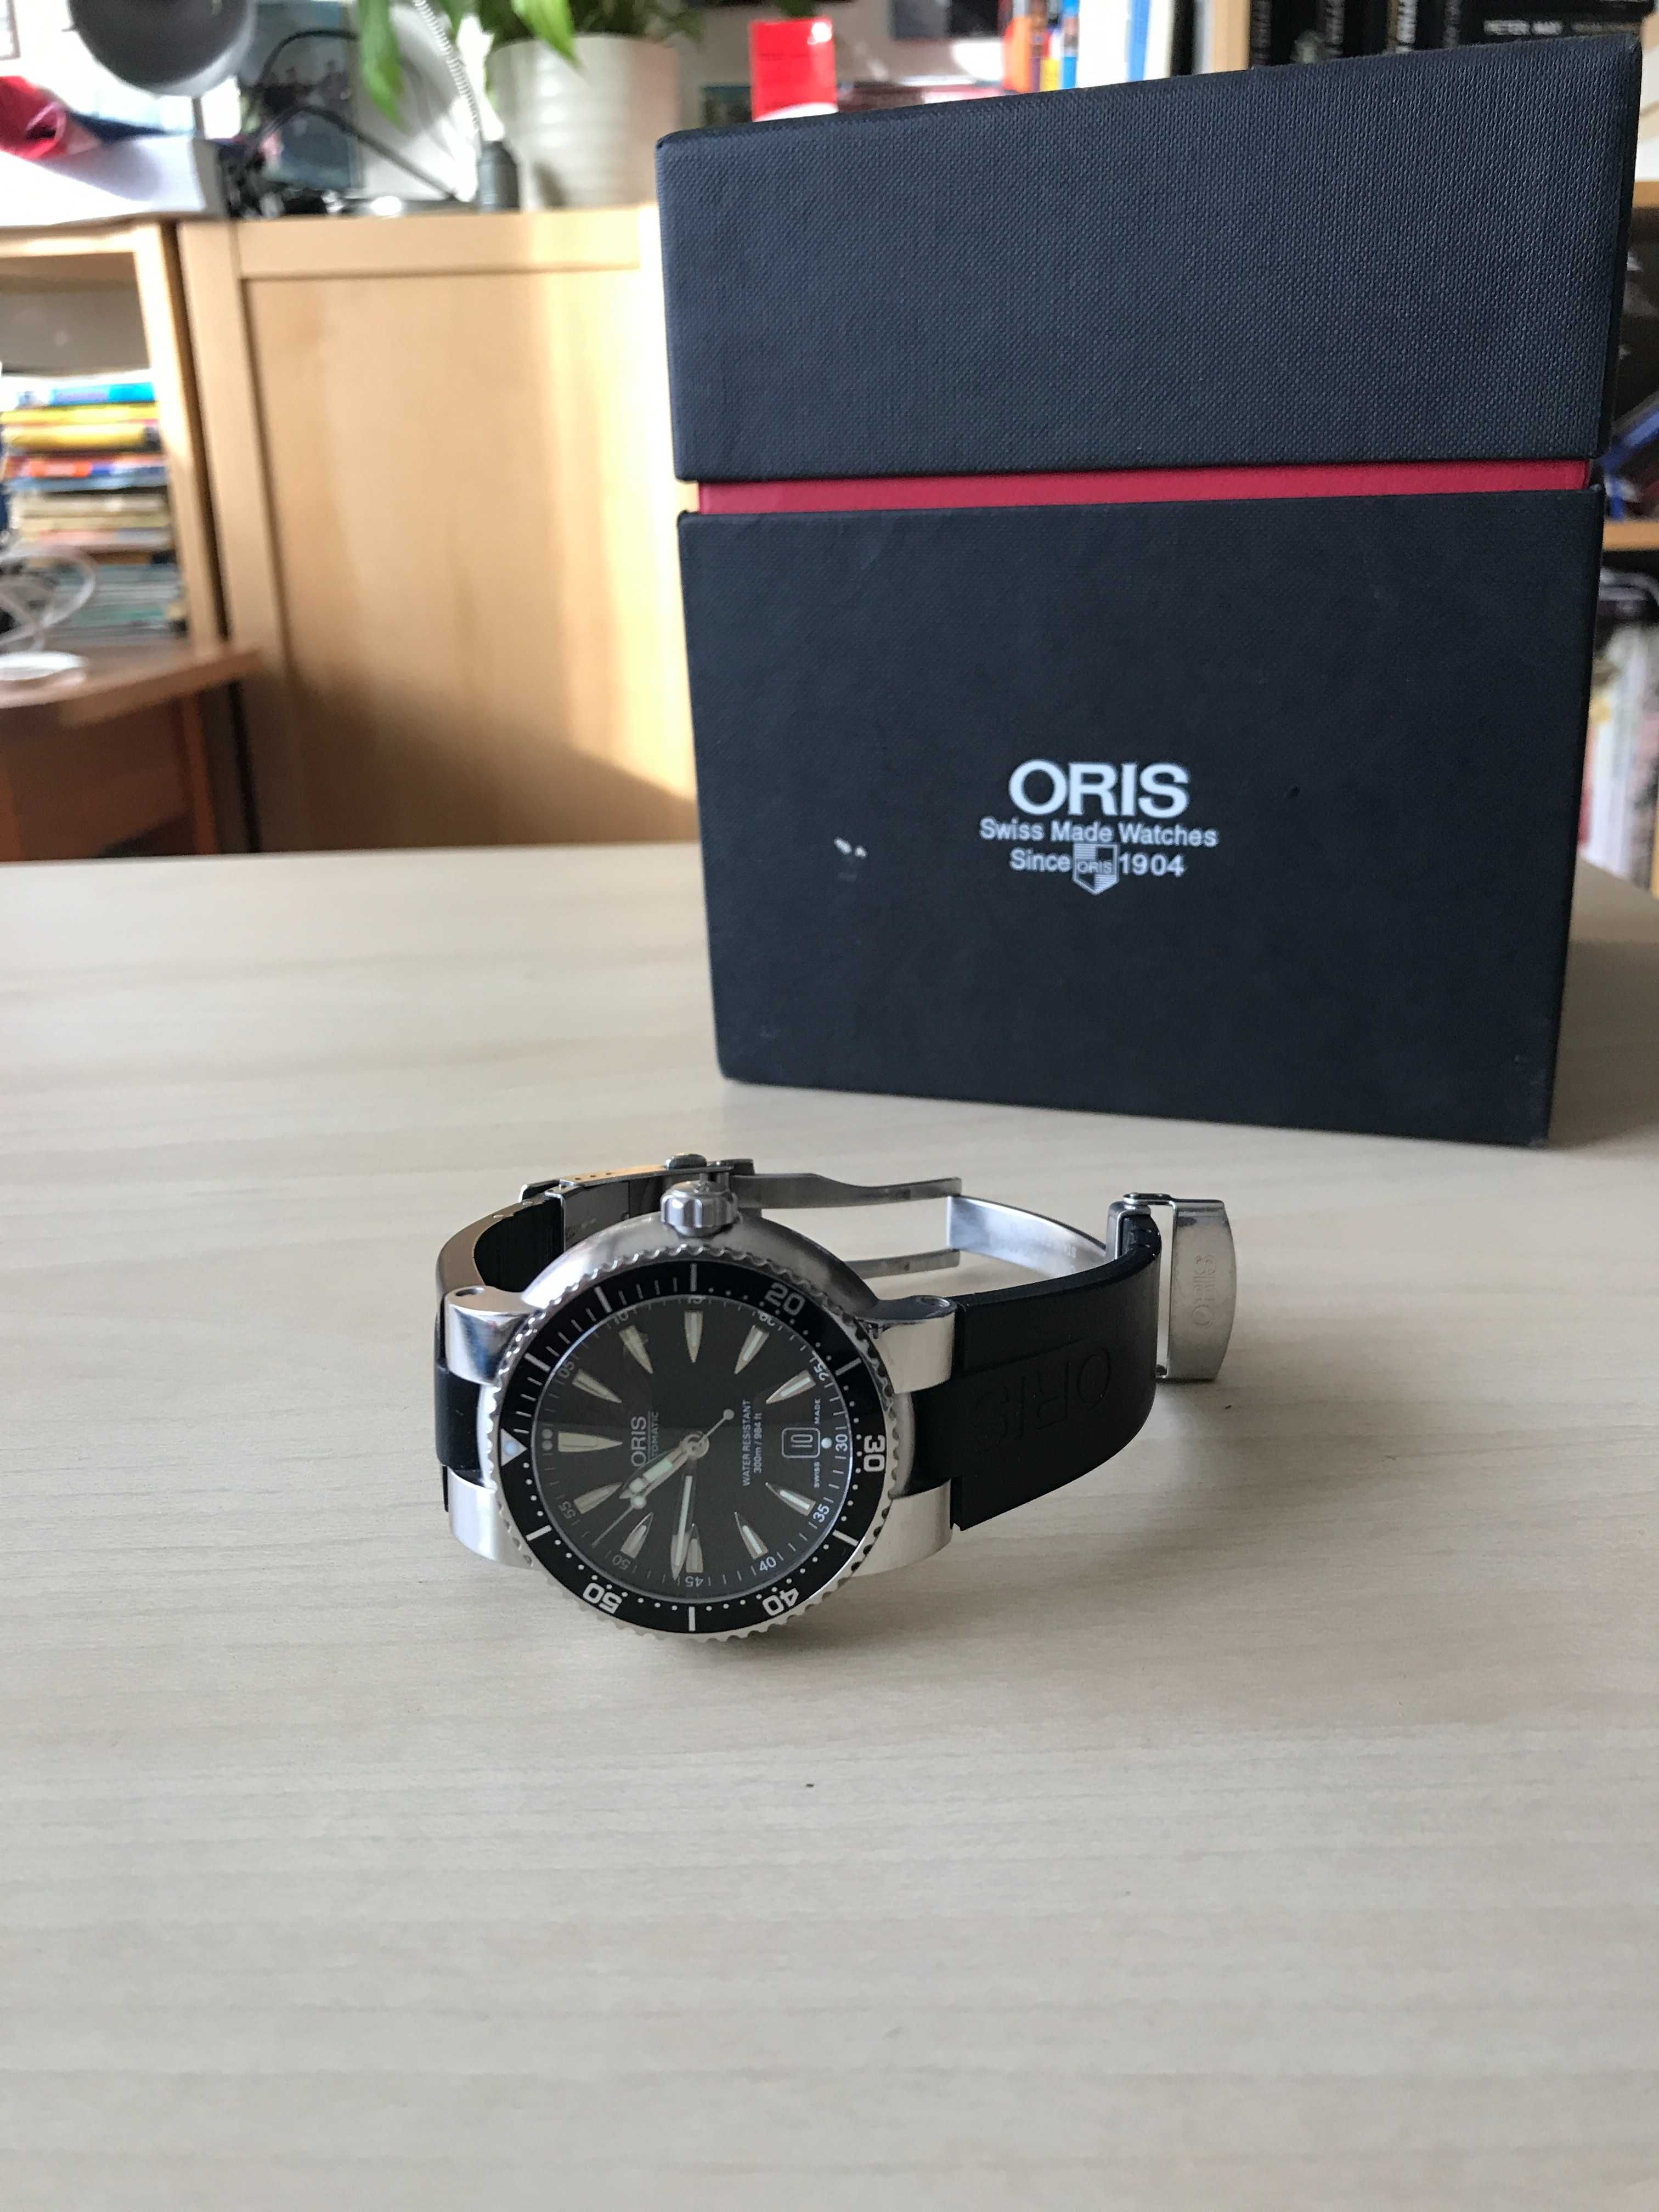 Zegarek automatyczny Oris Divers Professional 44mm. Bdb stan. Tanio